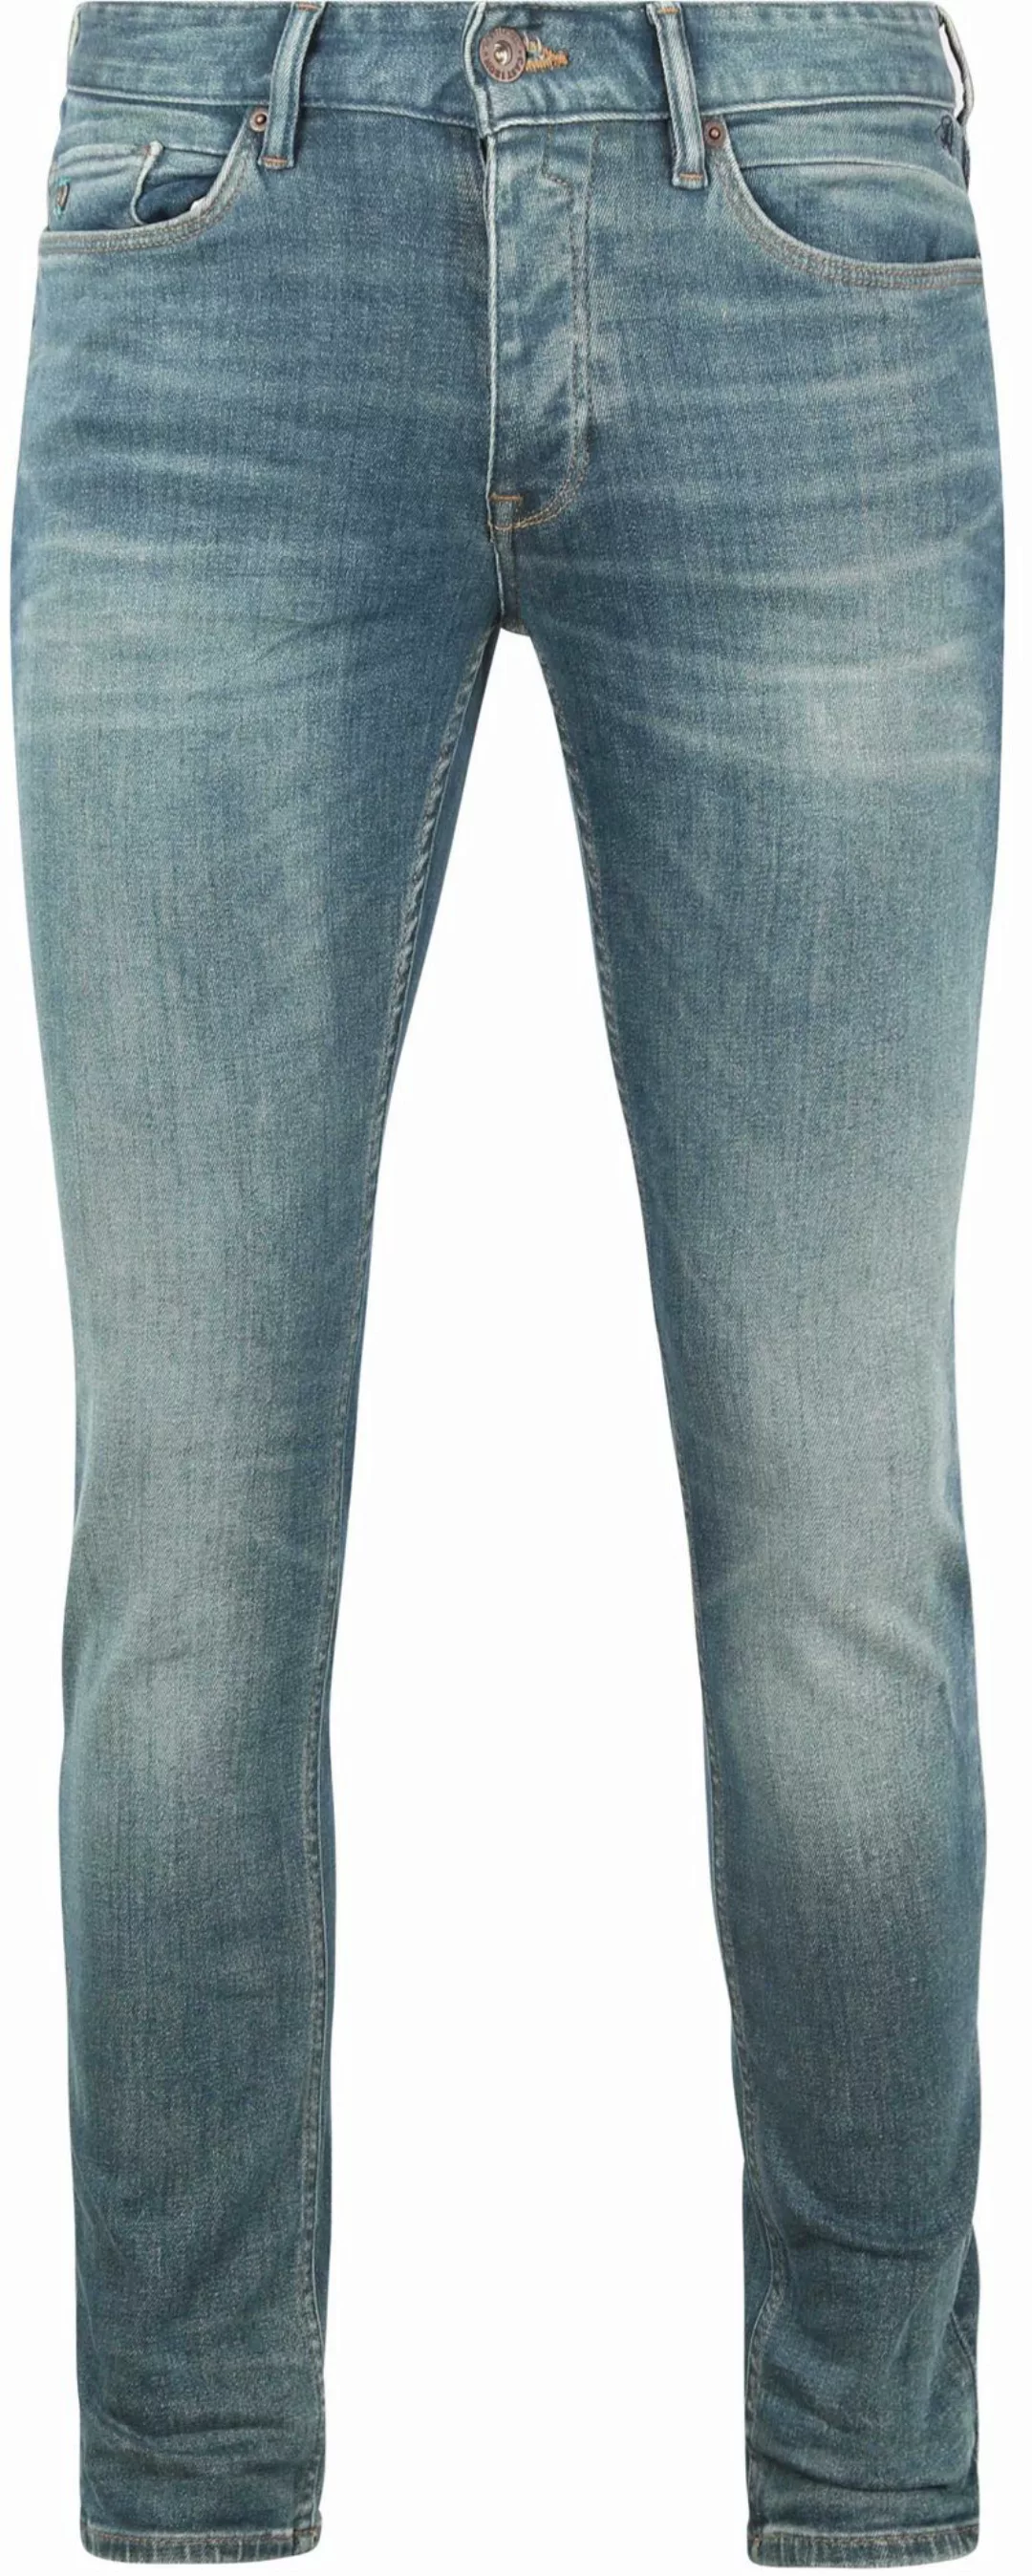 Cast Iron Riser Jeans Hellblau - Größe W 36 - L 34 günstig online kaufen